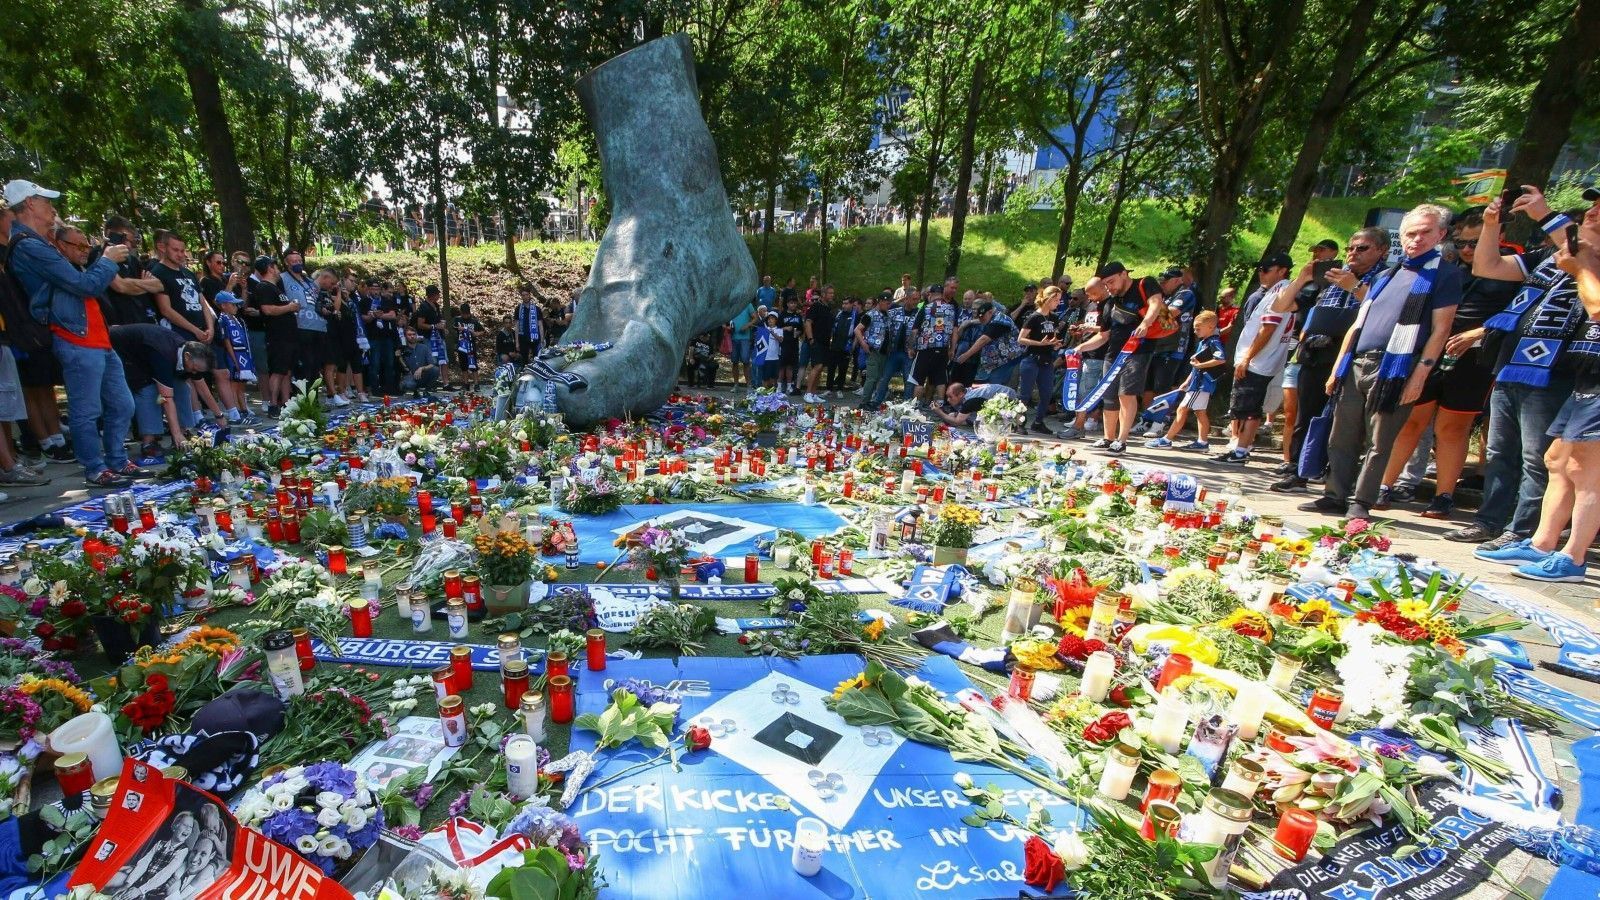 
                <strong>Gedenken vor dem Stadion</strong><br>
                Bereits vor der Partie gedenken die Fans der verstorbenen Fußball-Legende und legen an seinem bronzenen Fuß vor dem Stadion Blumen, Kerzen und Fanutensilien nieder.
              